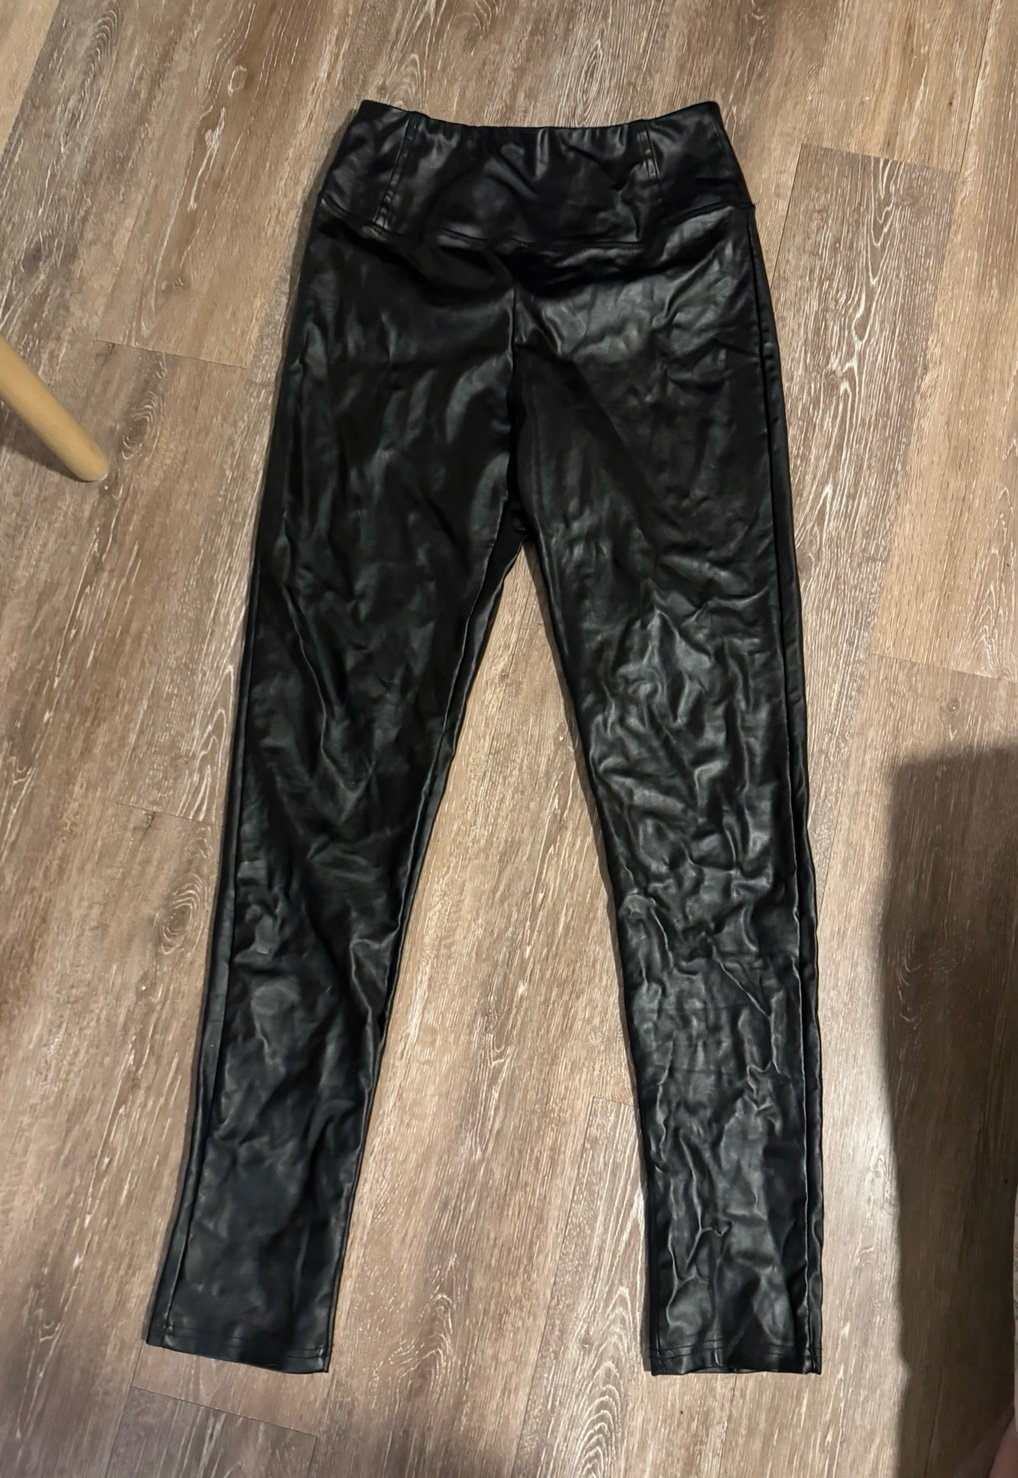 Perfect Boutique Women’s Large Black Leather Pants KVQr